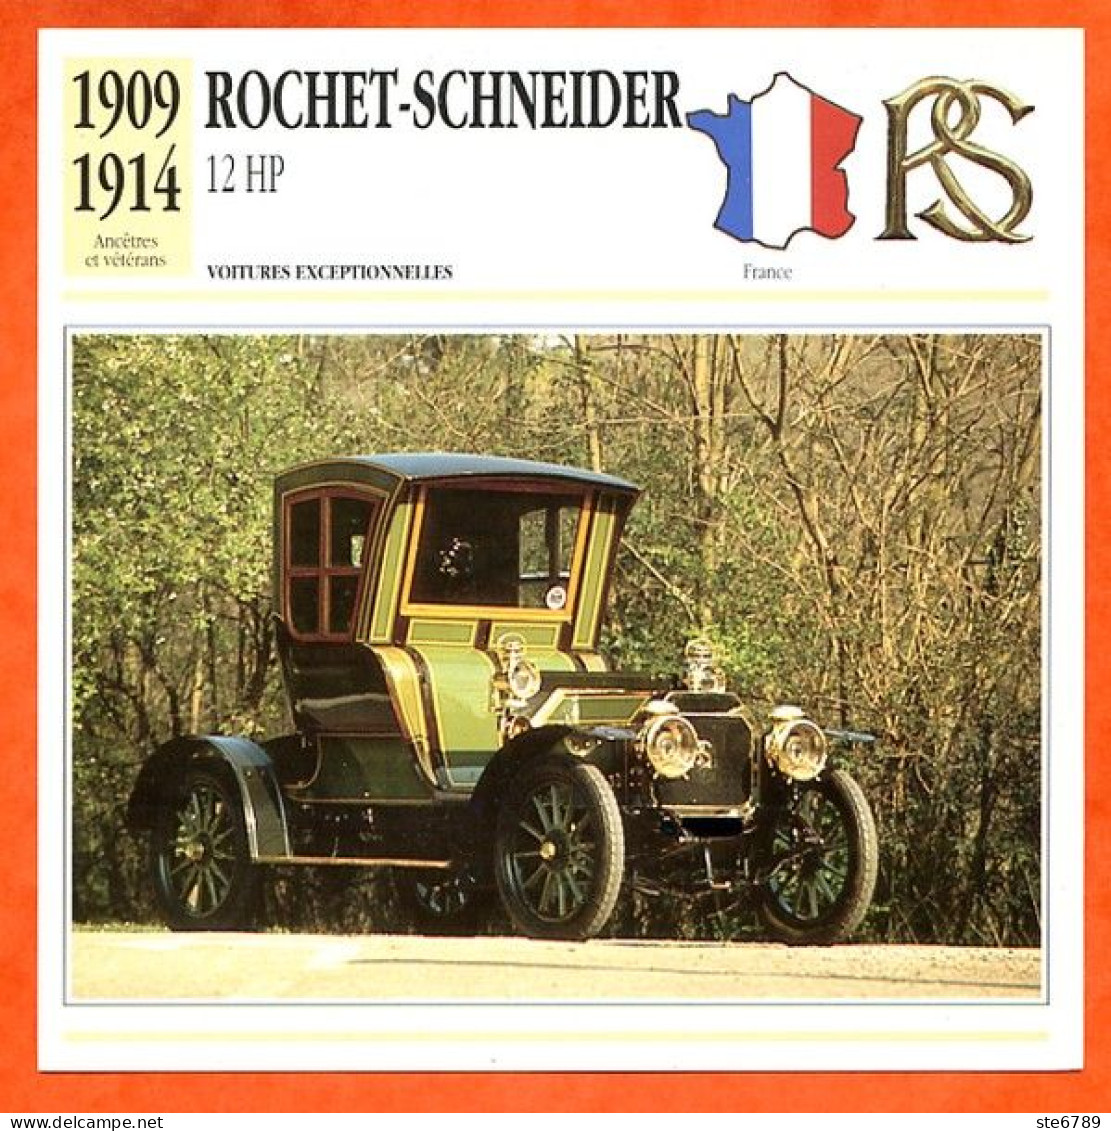 ROCHET SCHNEIDER 12 HP 1909 Voiture Exceptionnelle France Fiche Technique Automobile - Cars